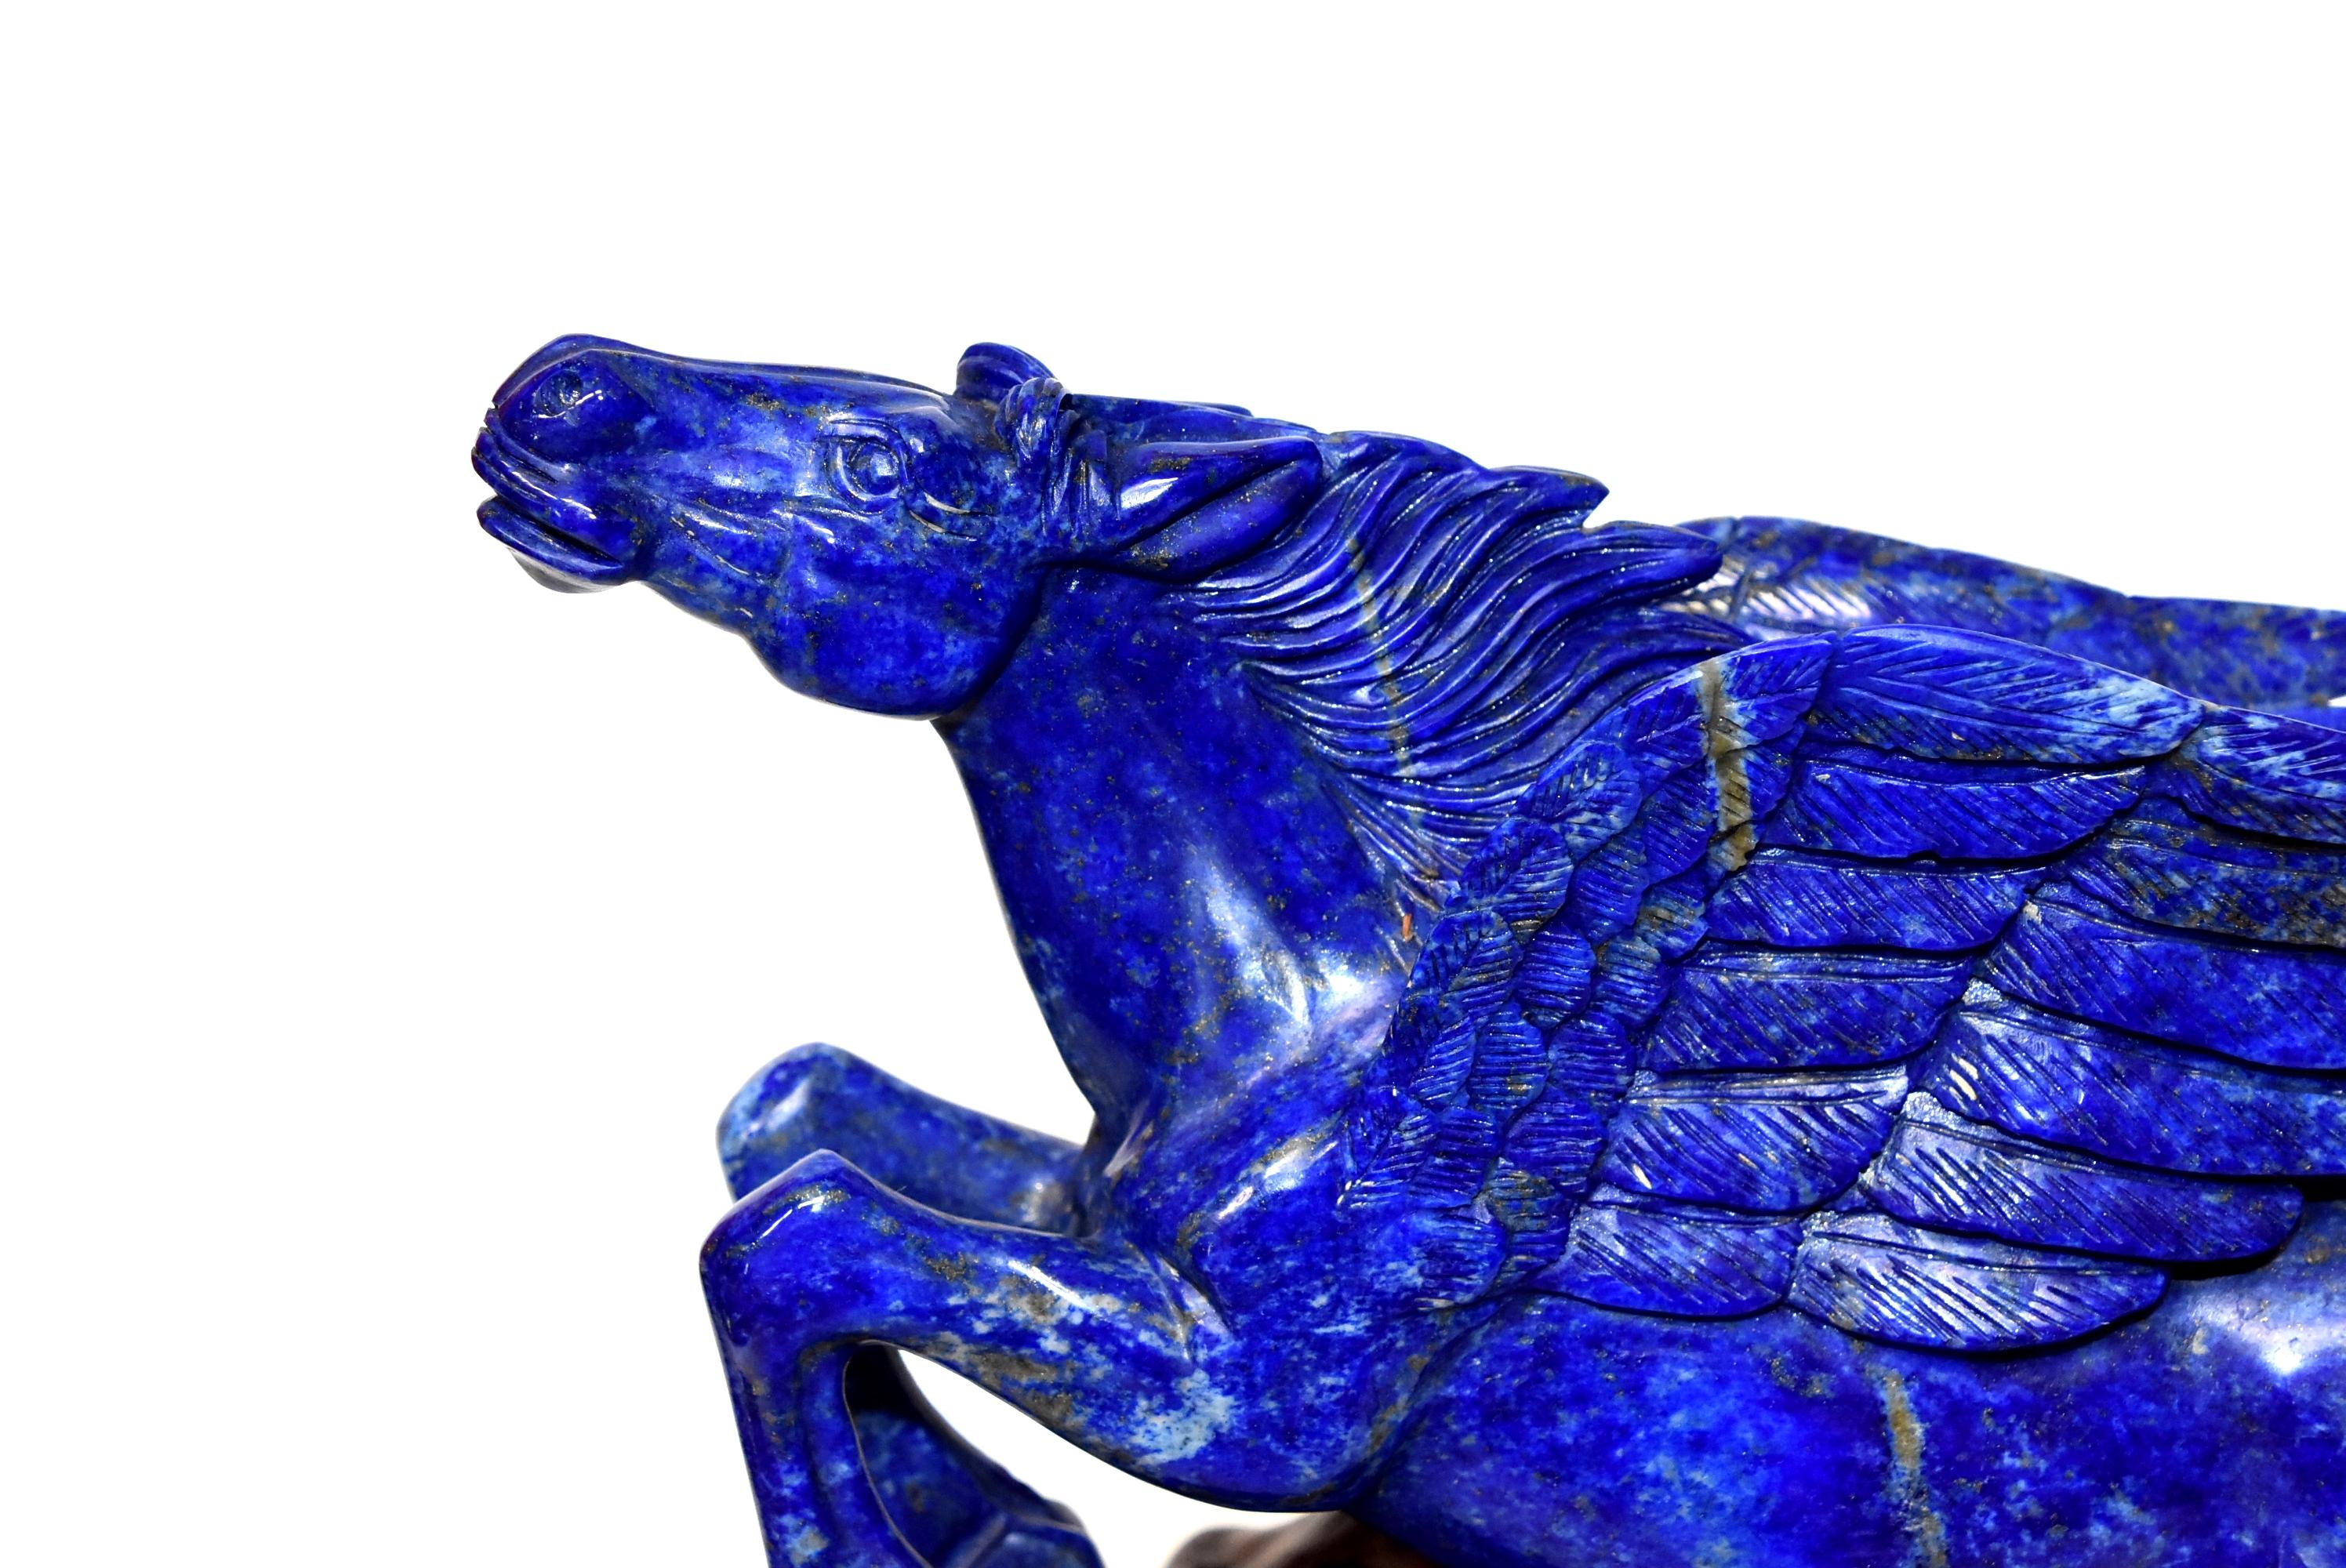 Afghan Lapis Lazuli Statue, 4.5 Lb Pegasus Sculpture by Known Artist